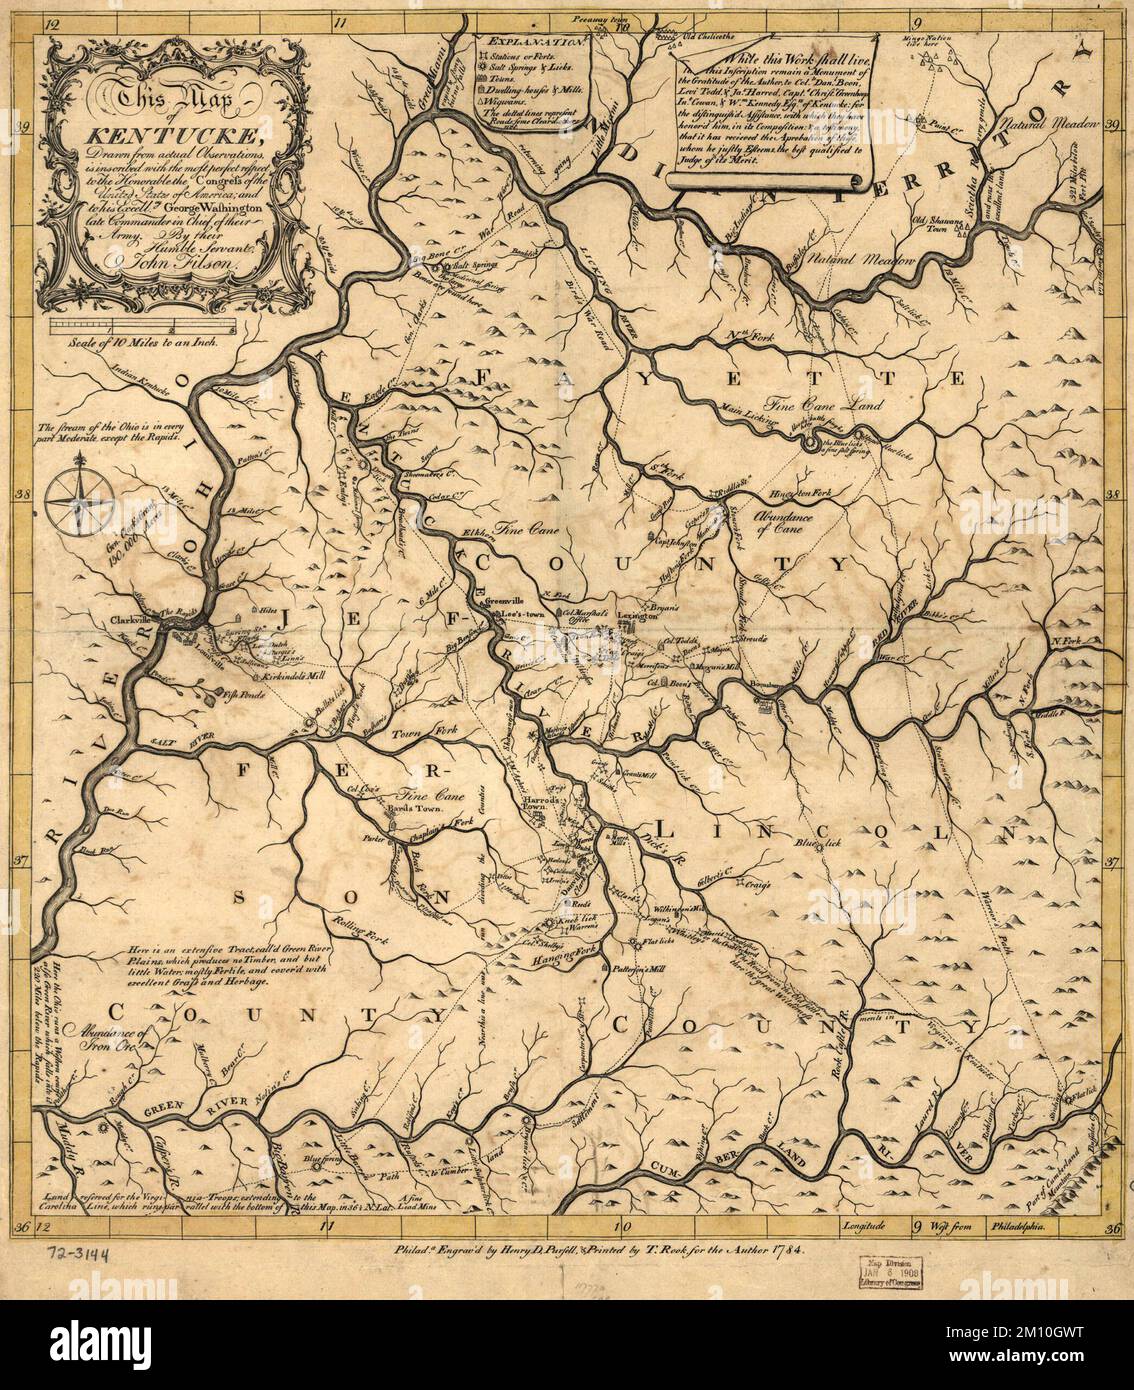 Mappa del Kentucky pubblicata nel 1784 Foto Stock